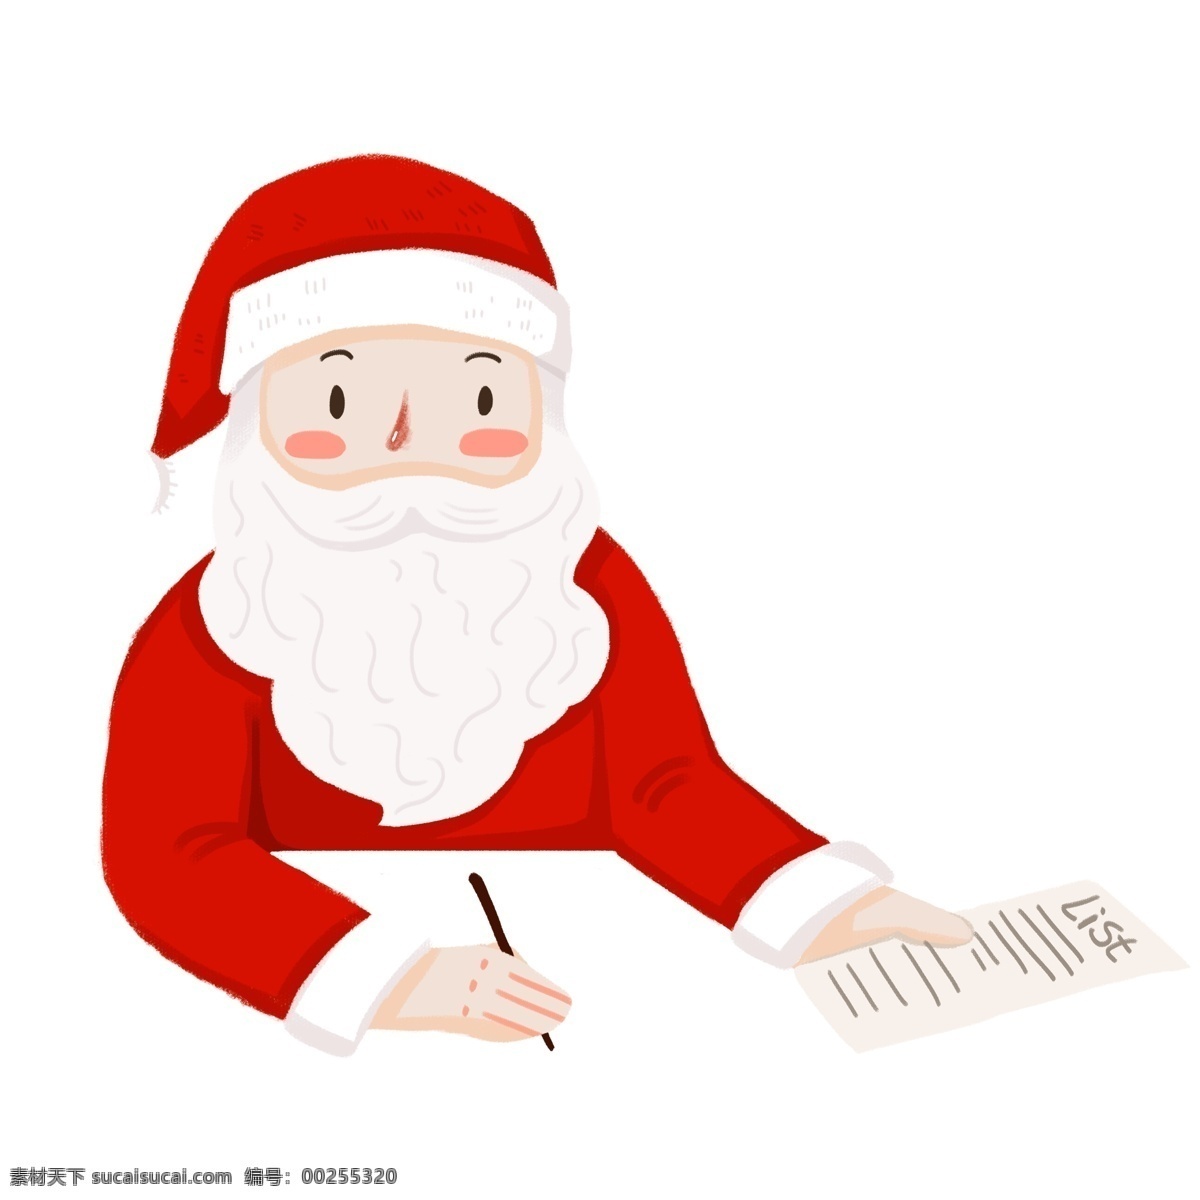 写 礼物 清单 圣诞老人 卡通 小清新 简约 圣诞节 插画 礼物清单